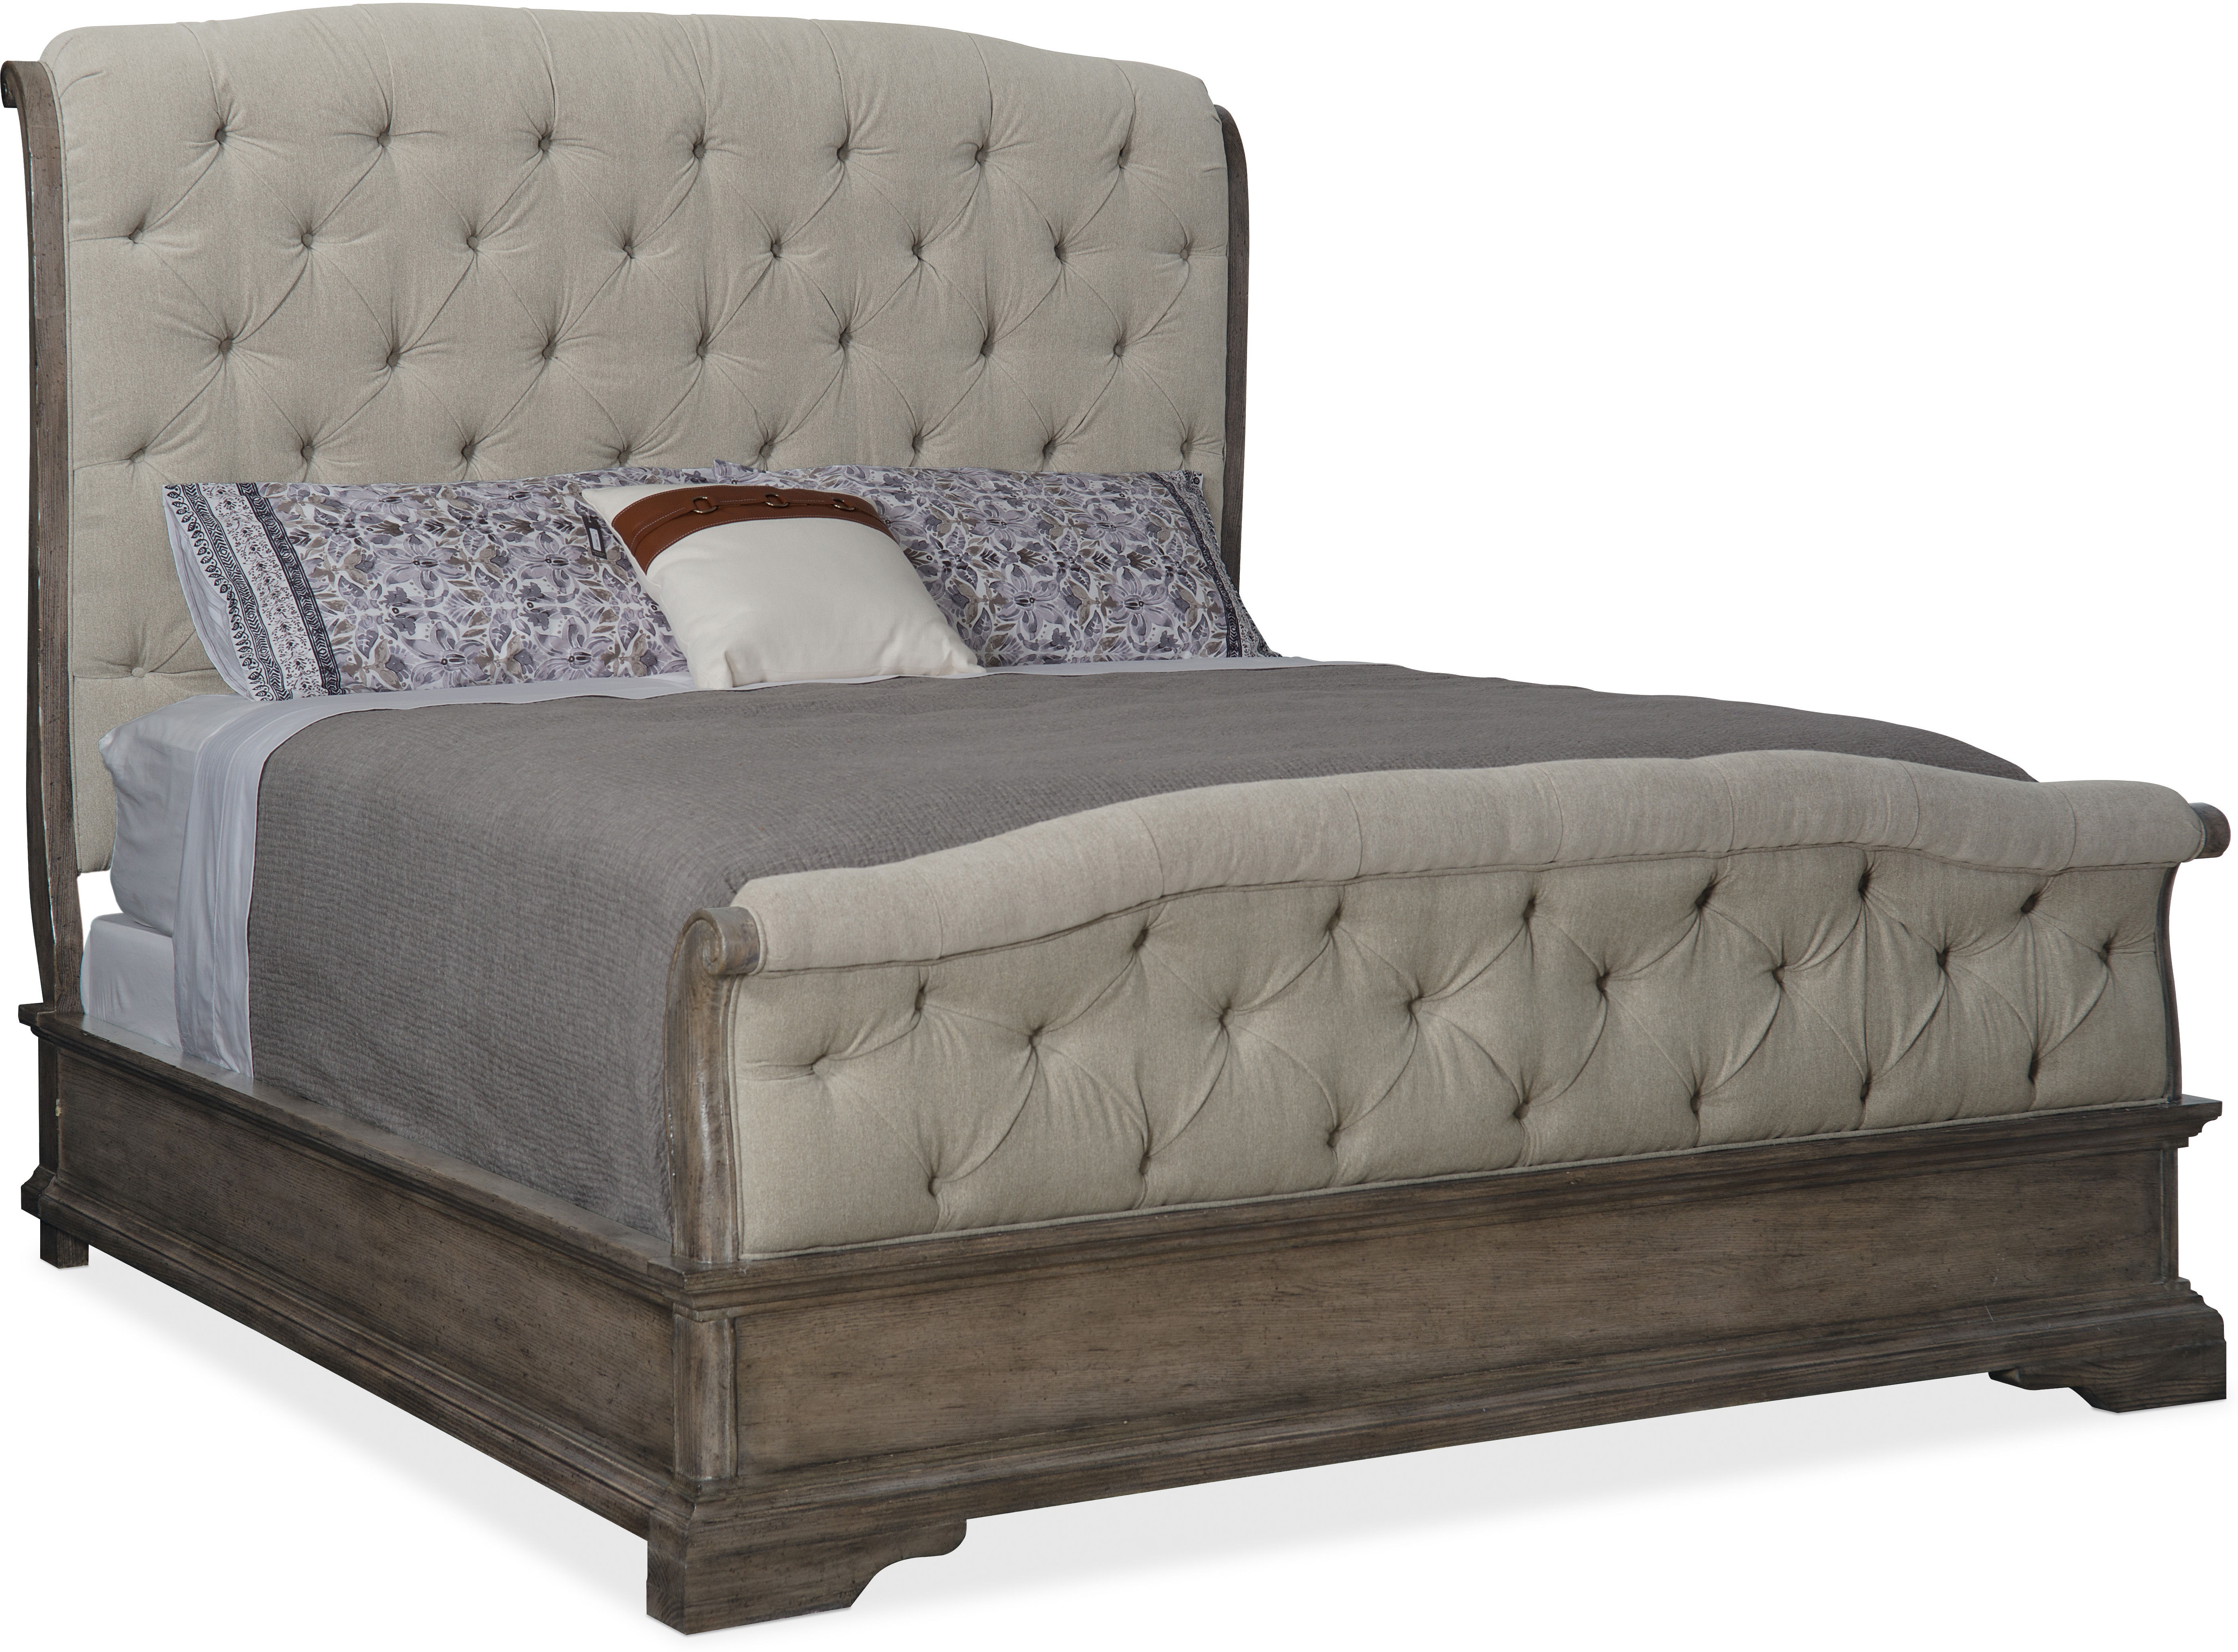 Hooker Furniture Bedroom Woodlands Cal King Upholstered Bed 5820 90860 84